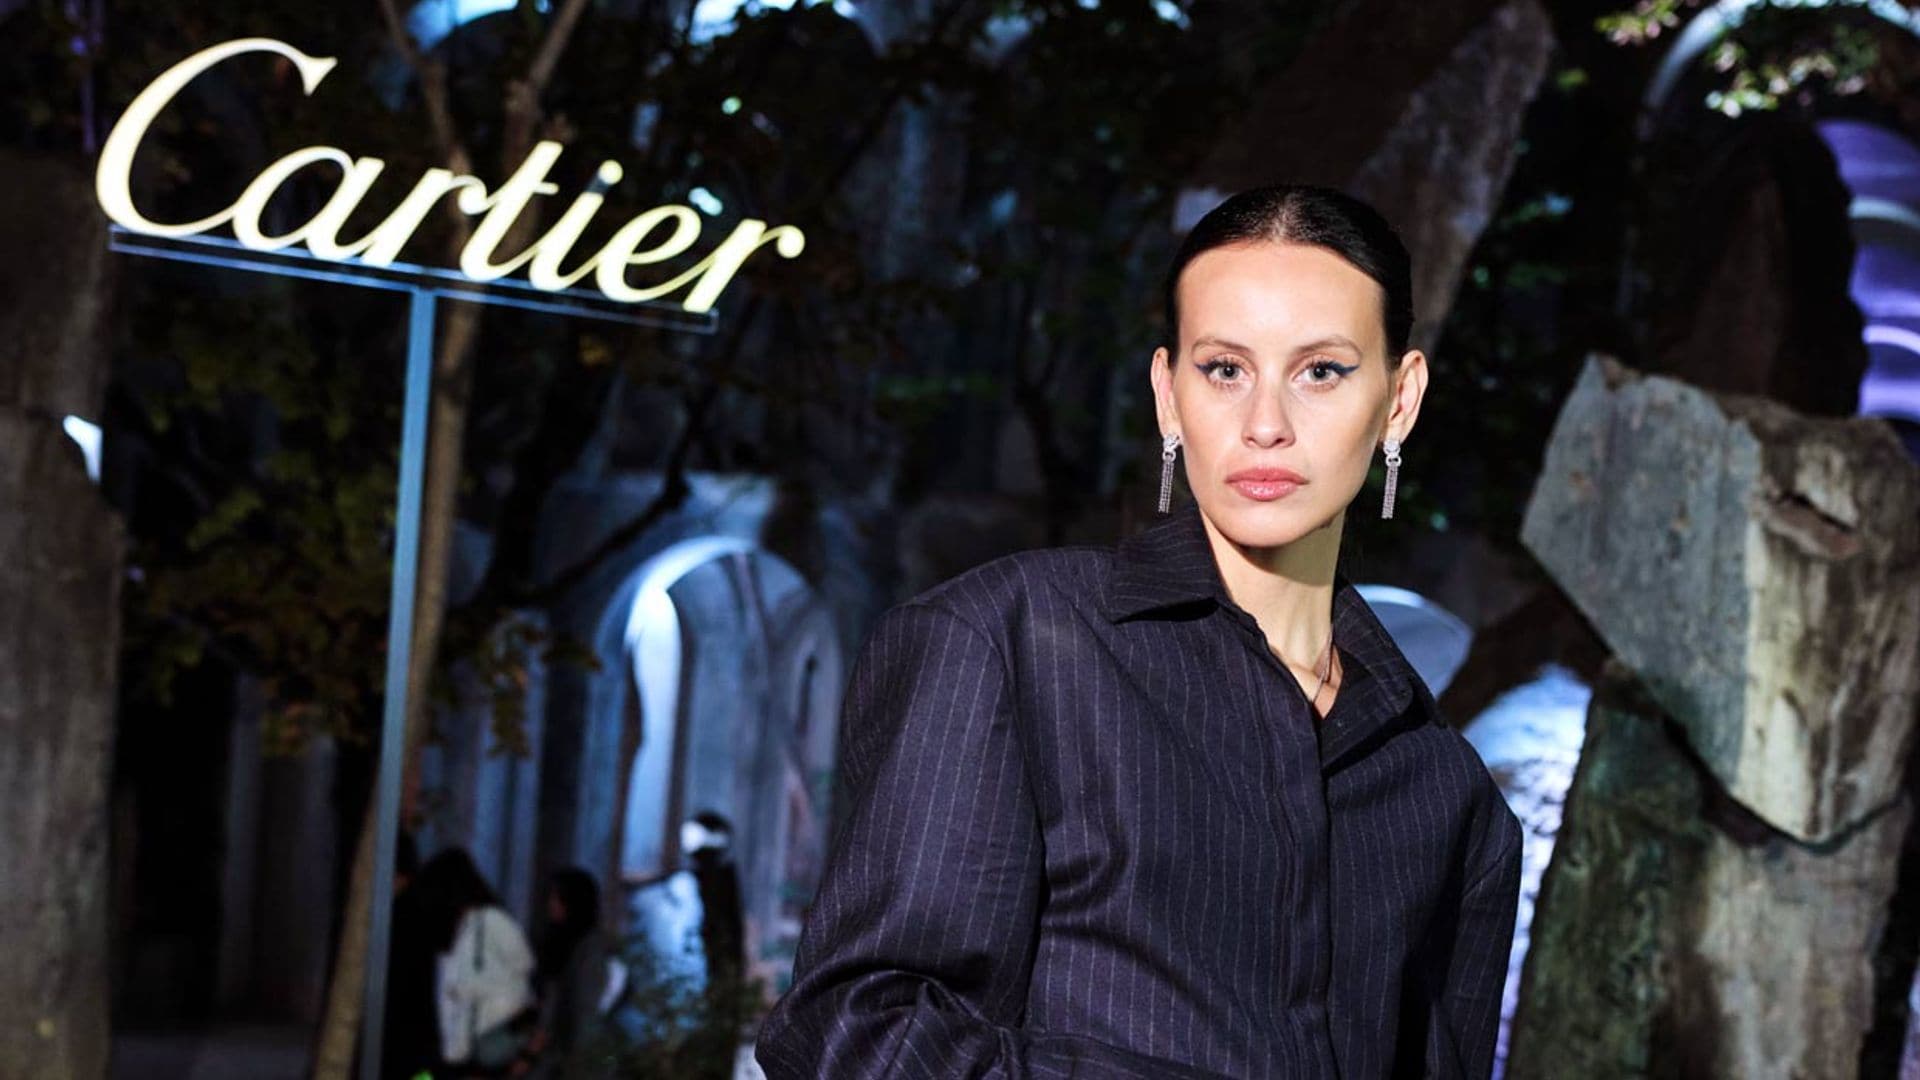 Milena Smit, de celebración con Cartier: 'Me gusta que me regalen joyas, adquieren más valor del que ya tienen'